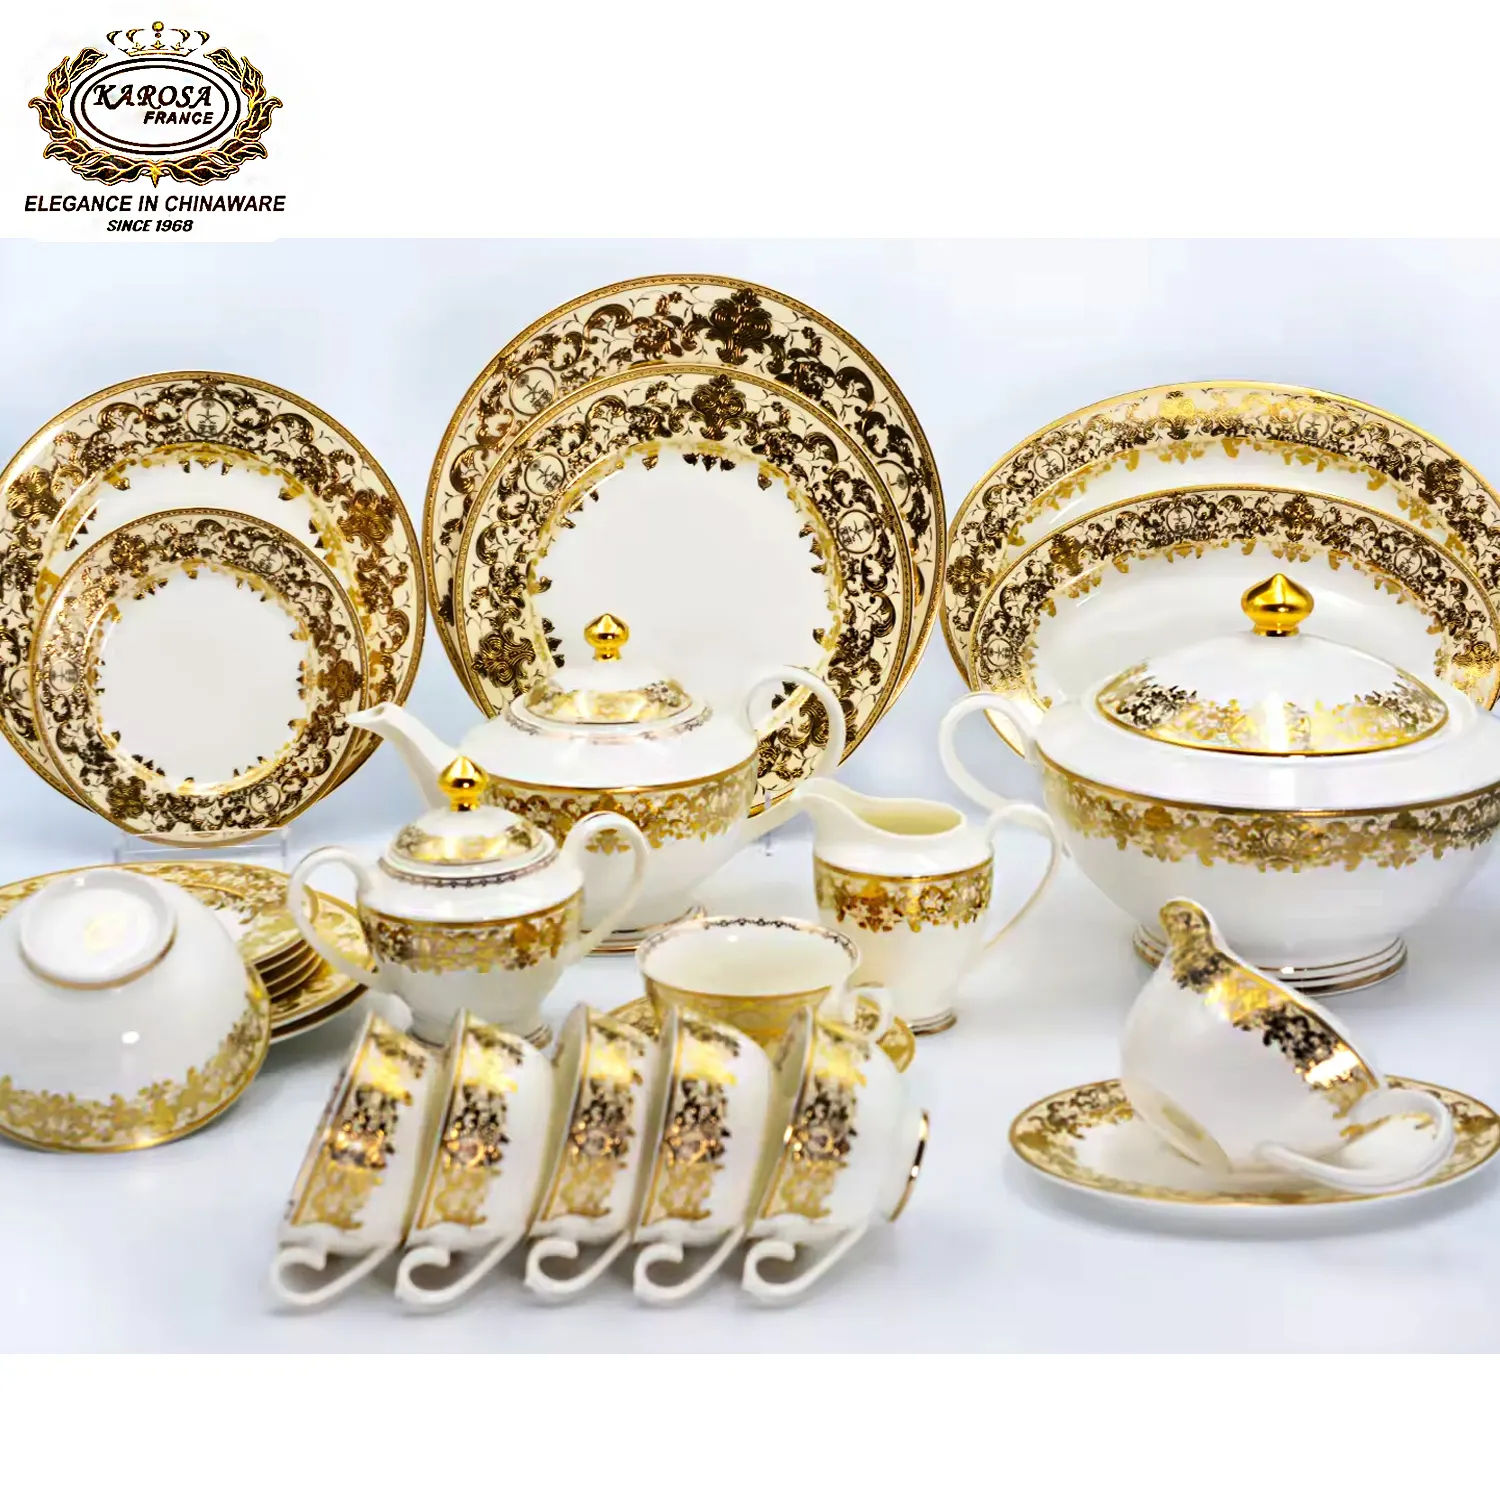 98 Uds. Decoración de oro puro en relieve de alta calidad, vajilla de porcelana china de hueso de estilo real, juegos de cena